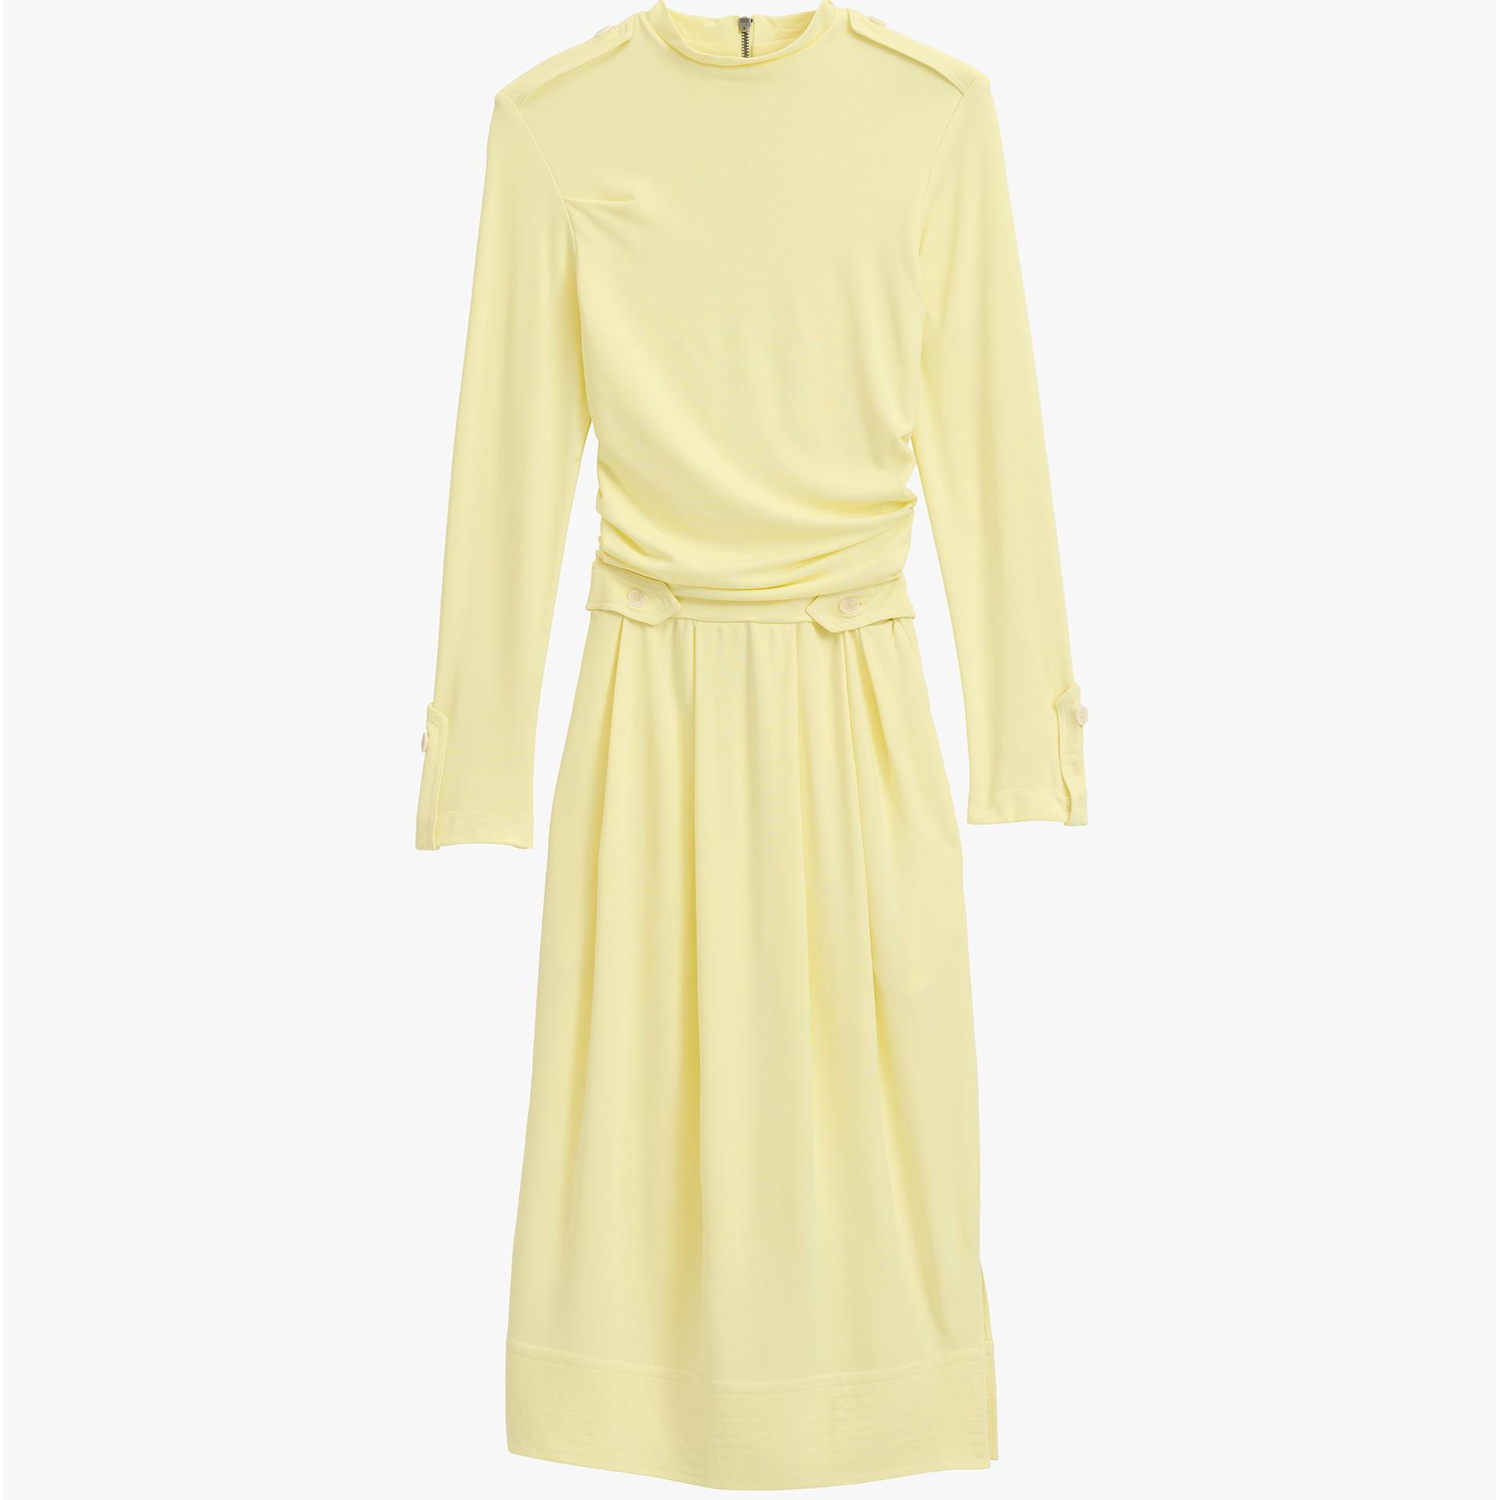 Платье Zara TGHT 12, желтый платье длинное на пуговицах с воланами с поясом 48 синий